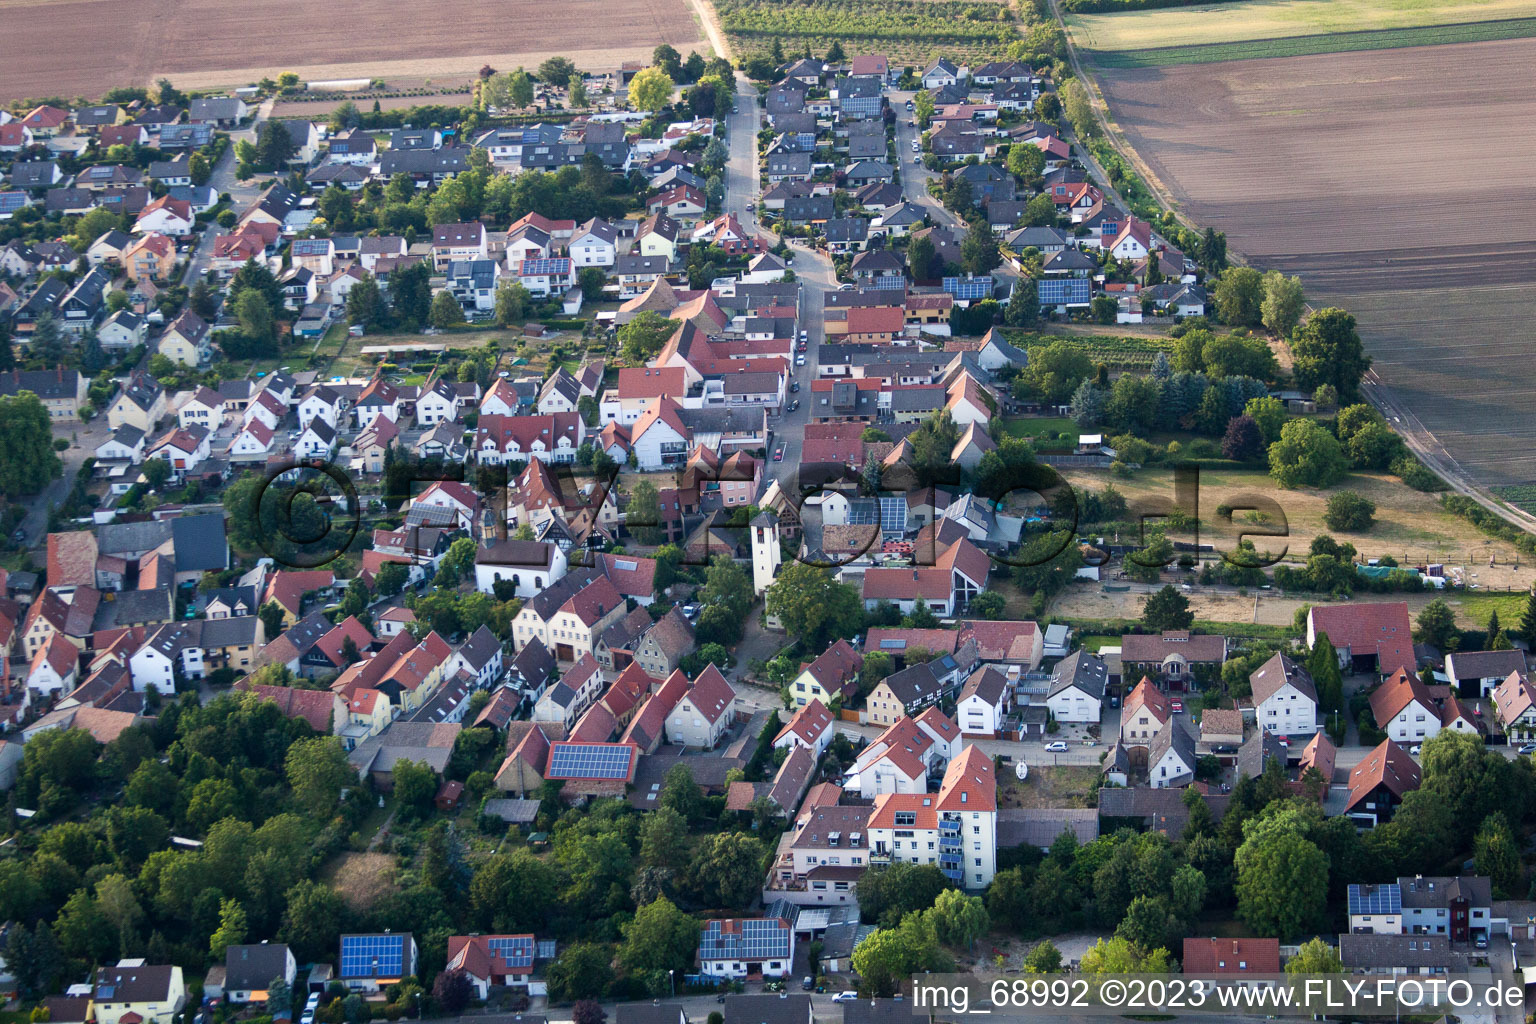 Bird's eye view of District Schauernheim in Dannstadt-Schauernheim in the state Rhineland-Palatinate, Germany